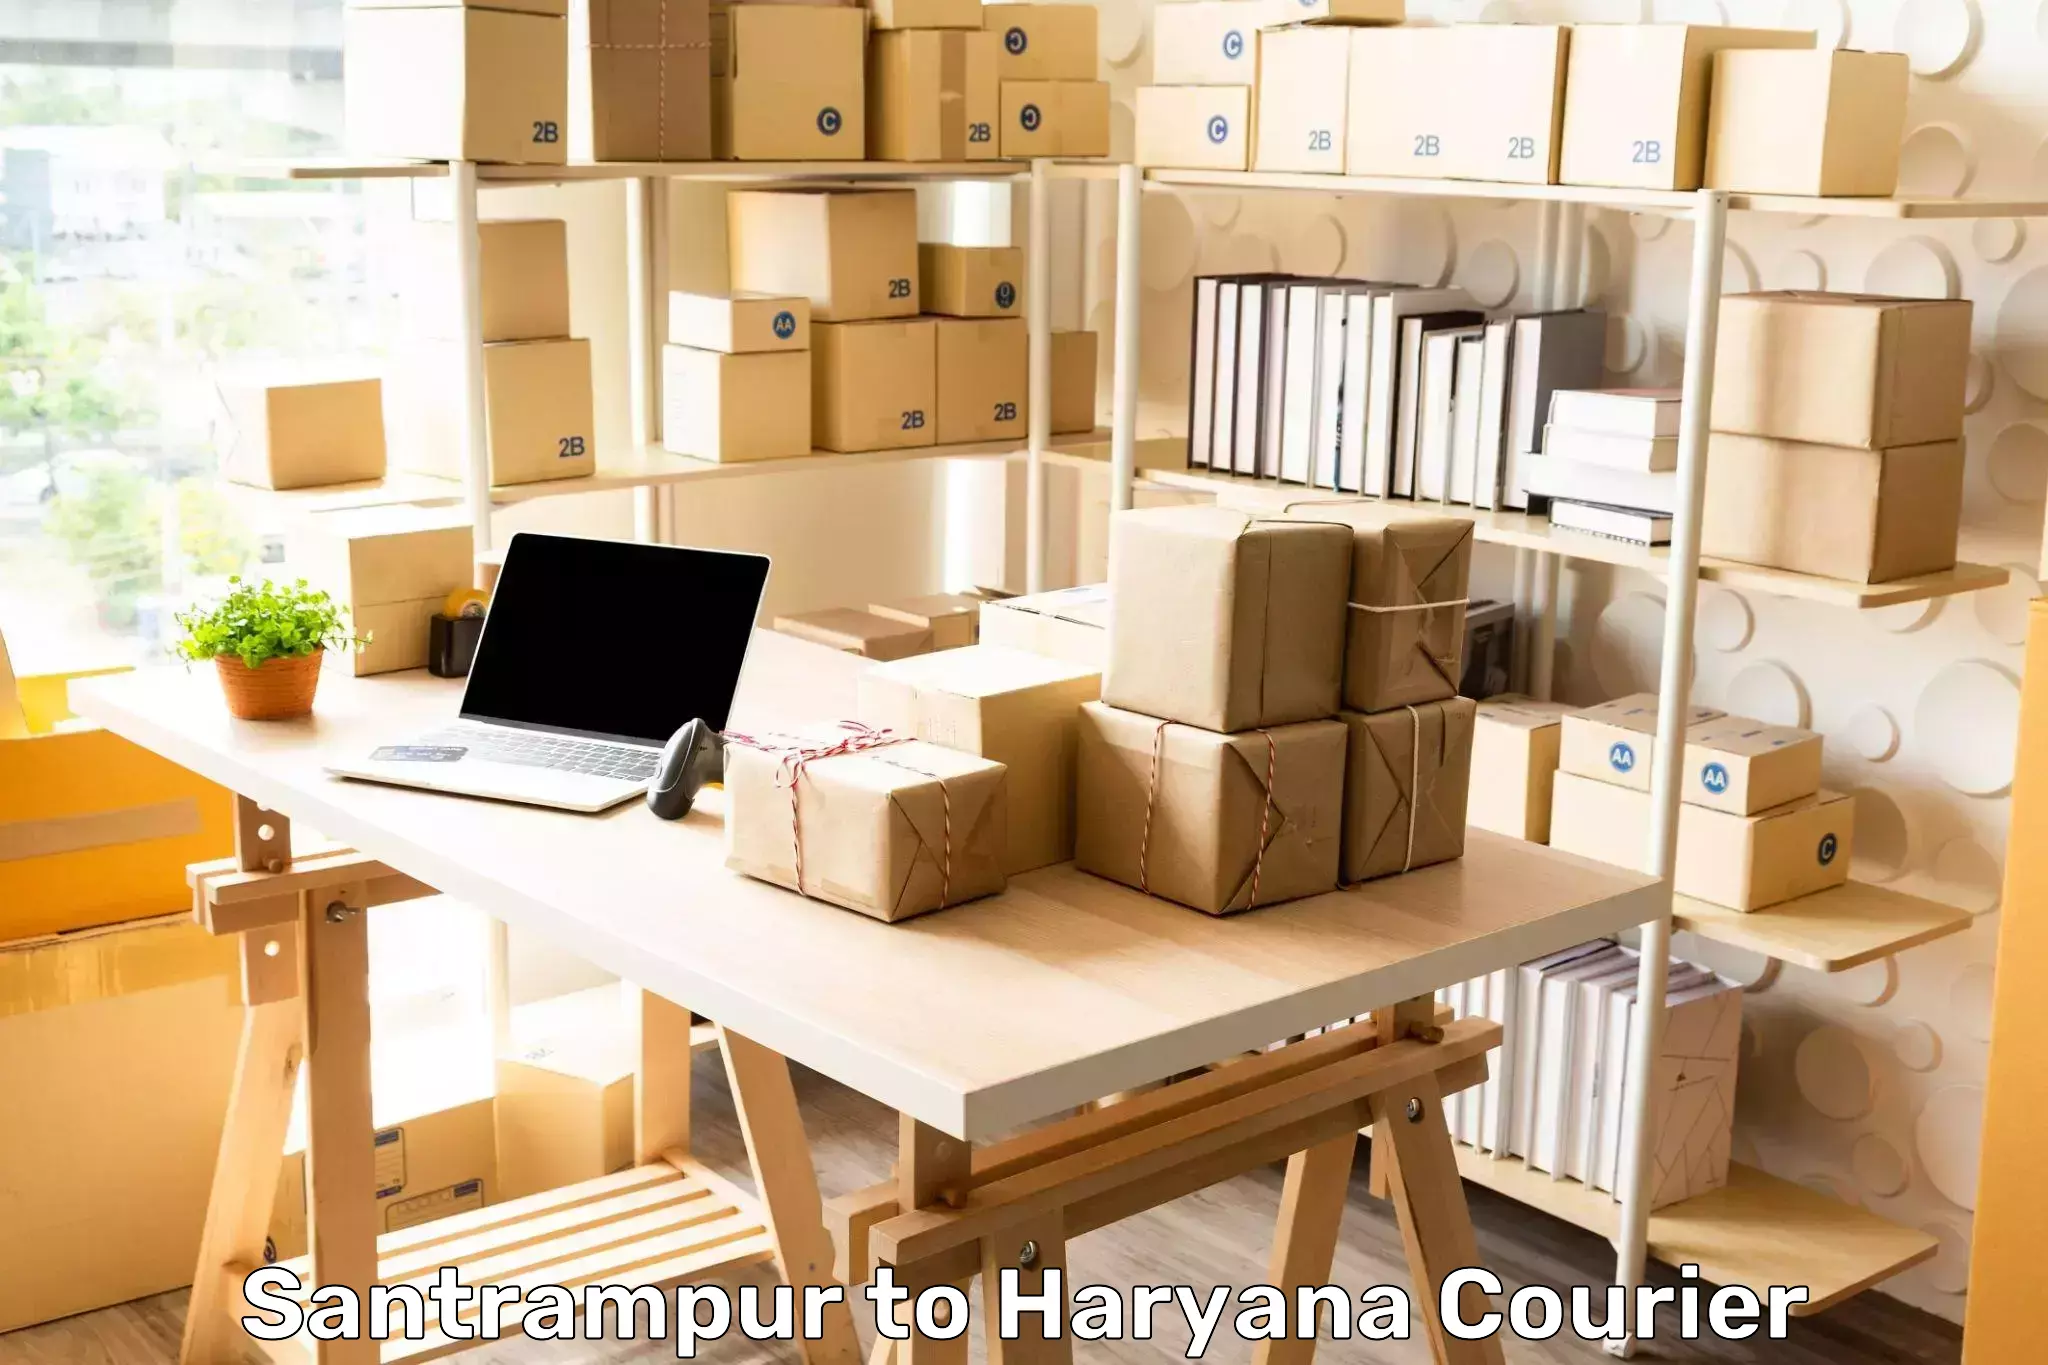 Package tracking in Santrampur to NCR Haryana